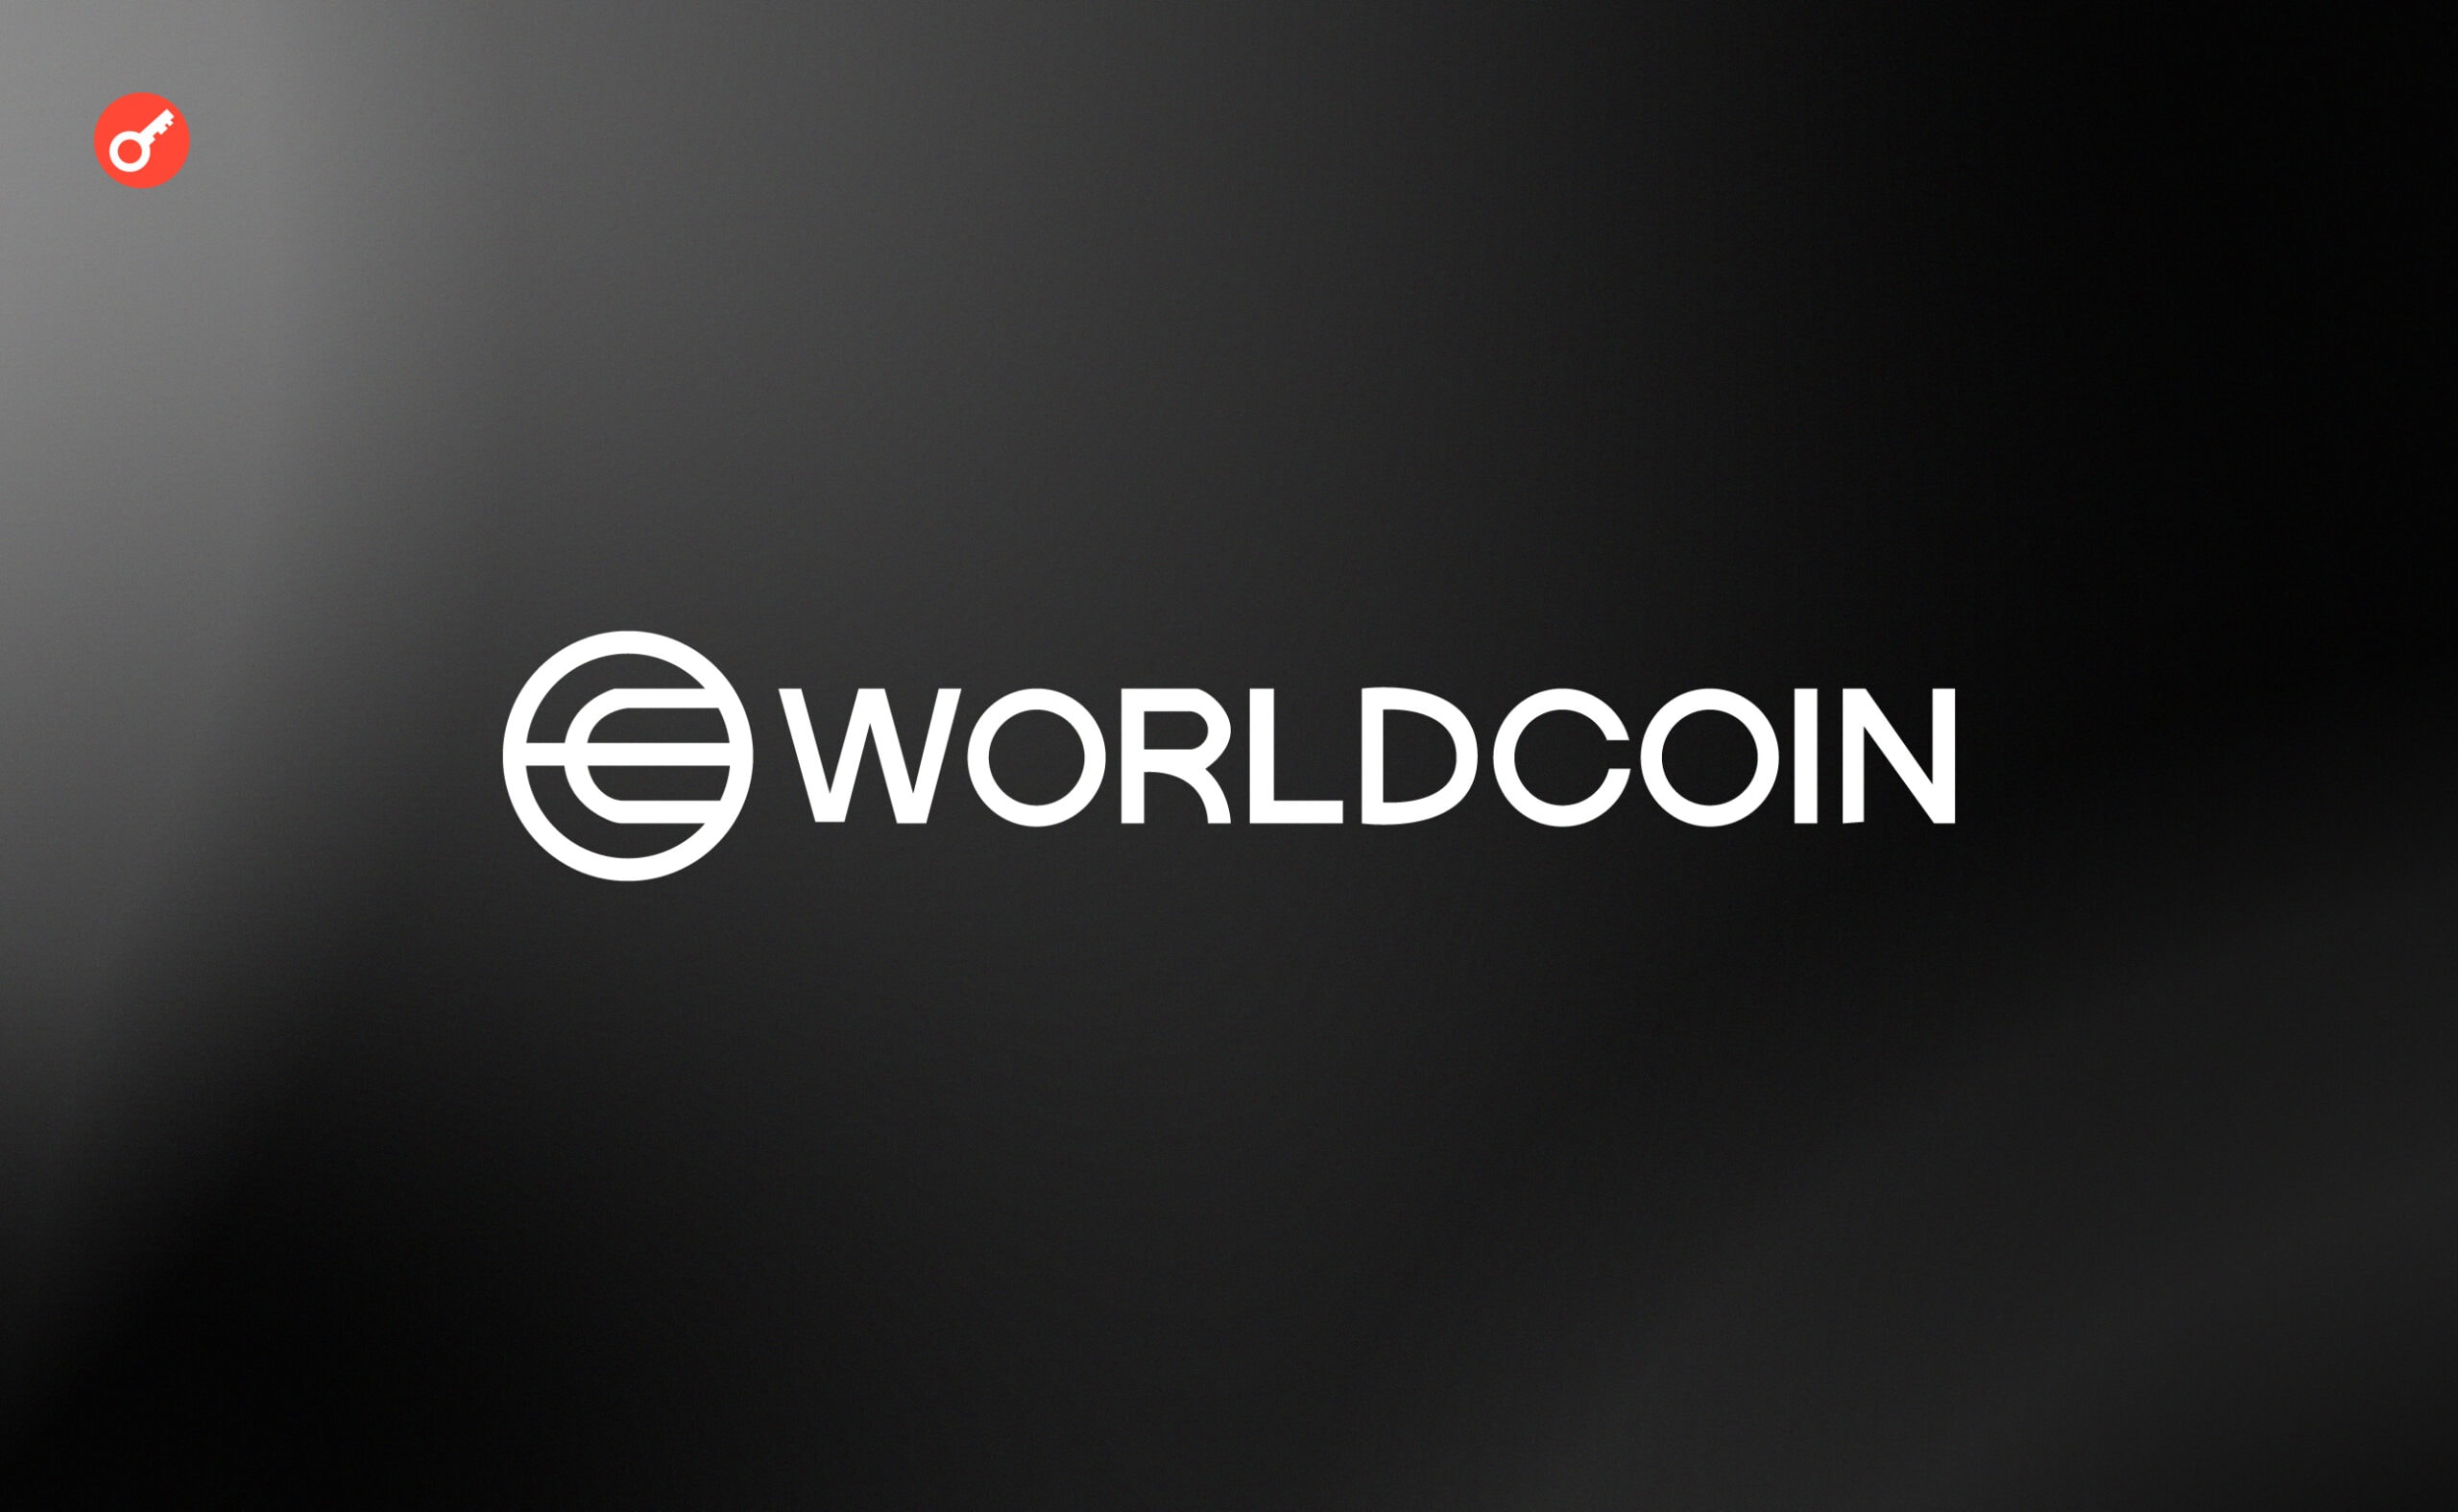 Криптопроєкт Worldcoin залучає $115 млн інвестицій. Головний колаж новини.